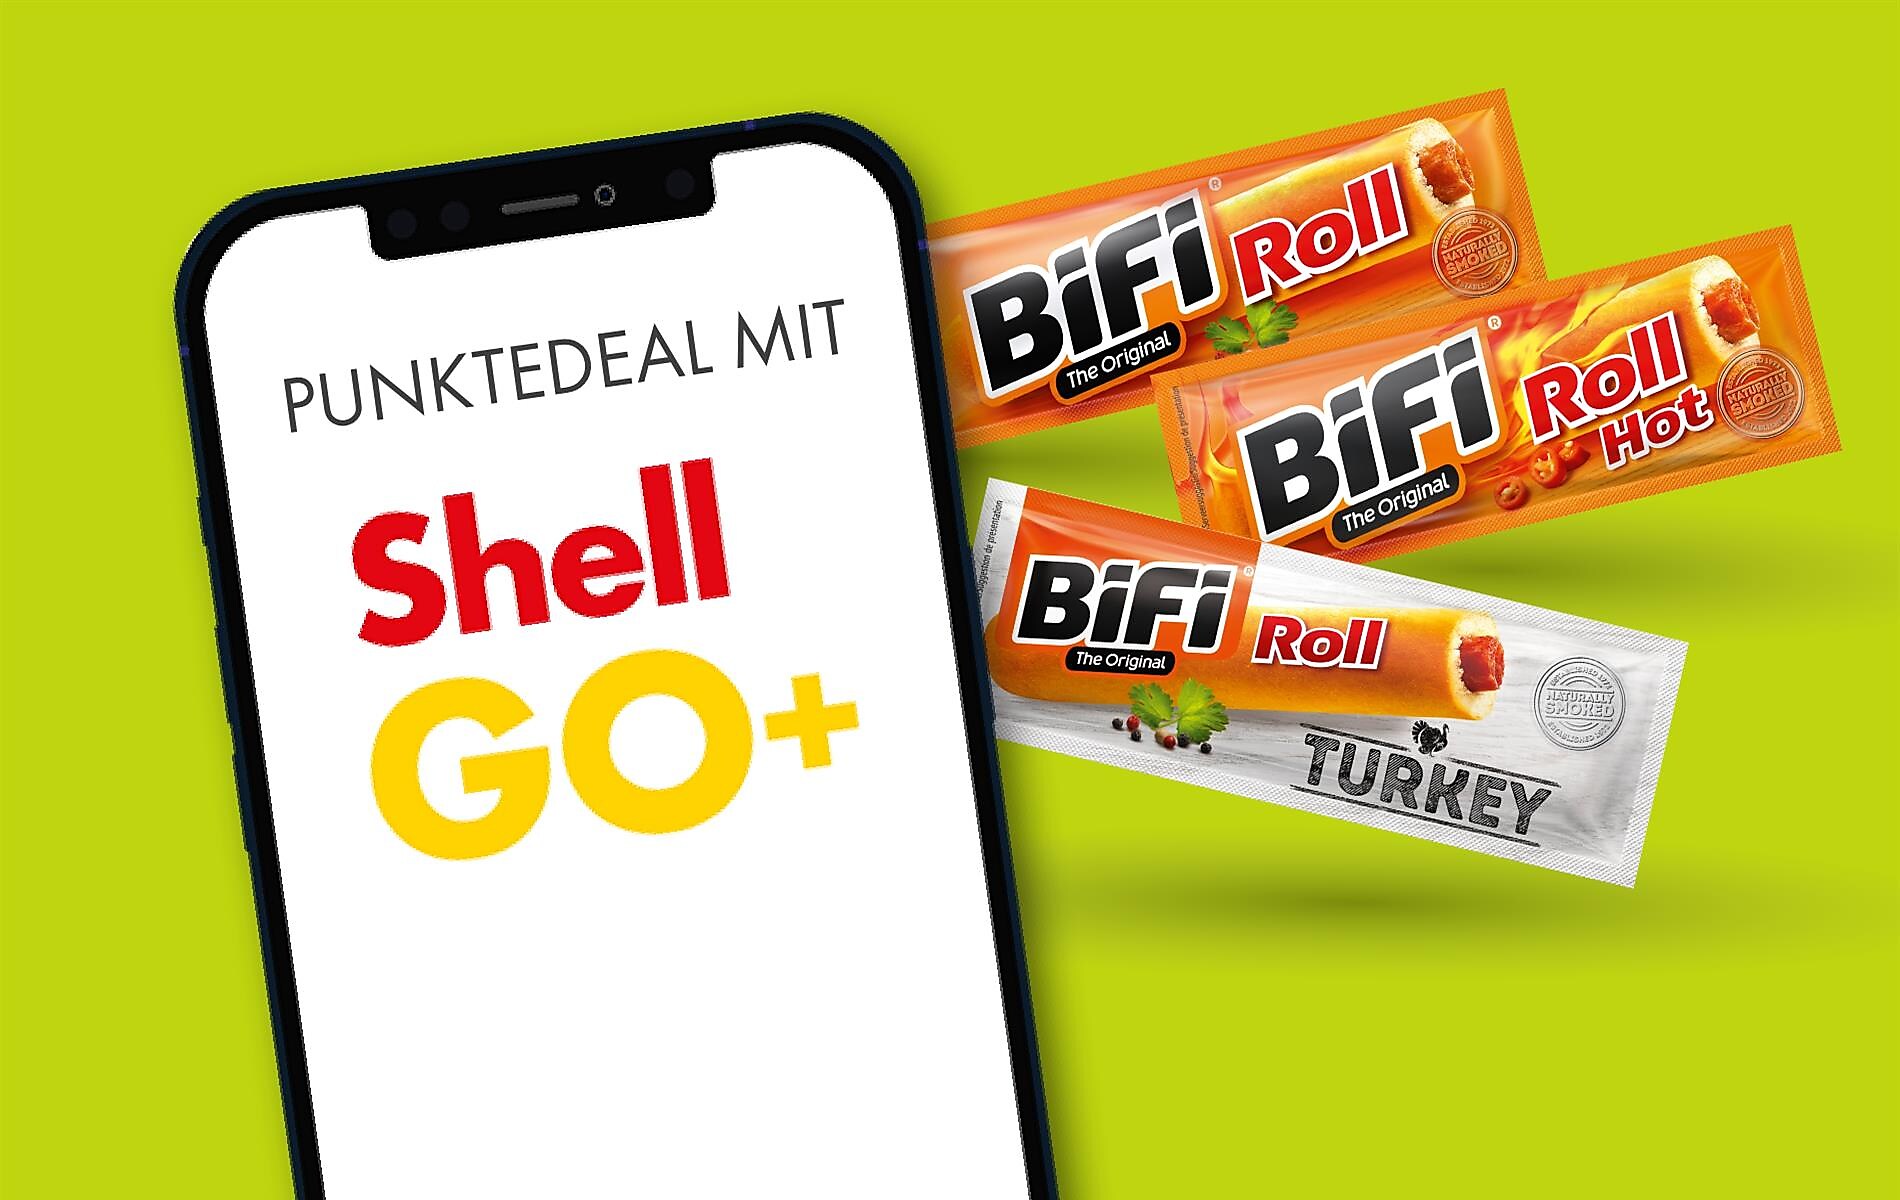 Shell Go+ Punktedeal: Bifi Roll um 150 Punkte